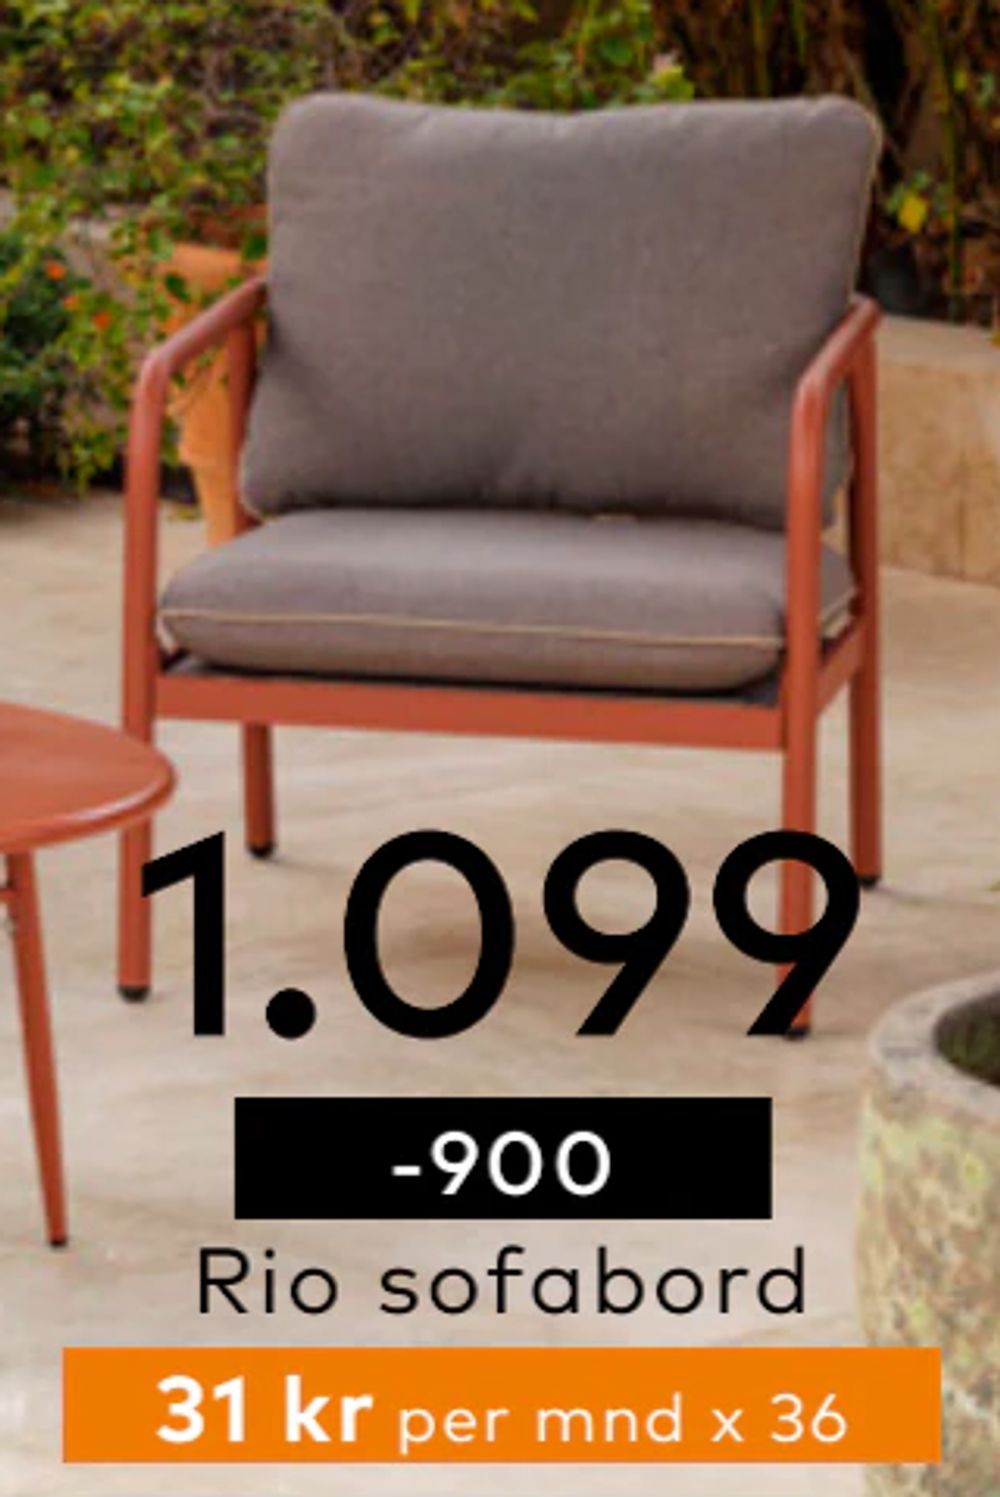 Tilbud på Rio sofabord fra Skeidar til 1 099 kr